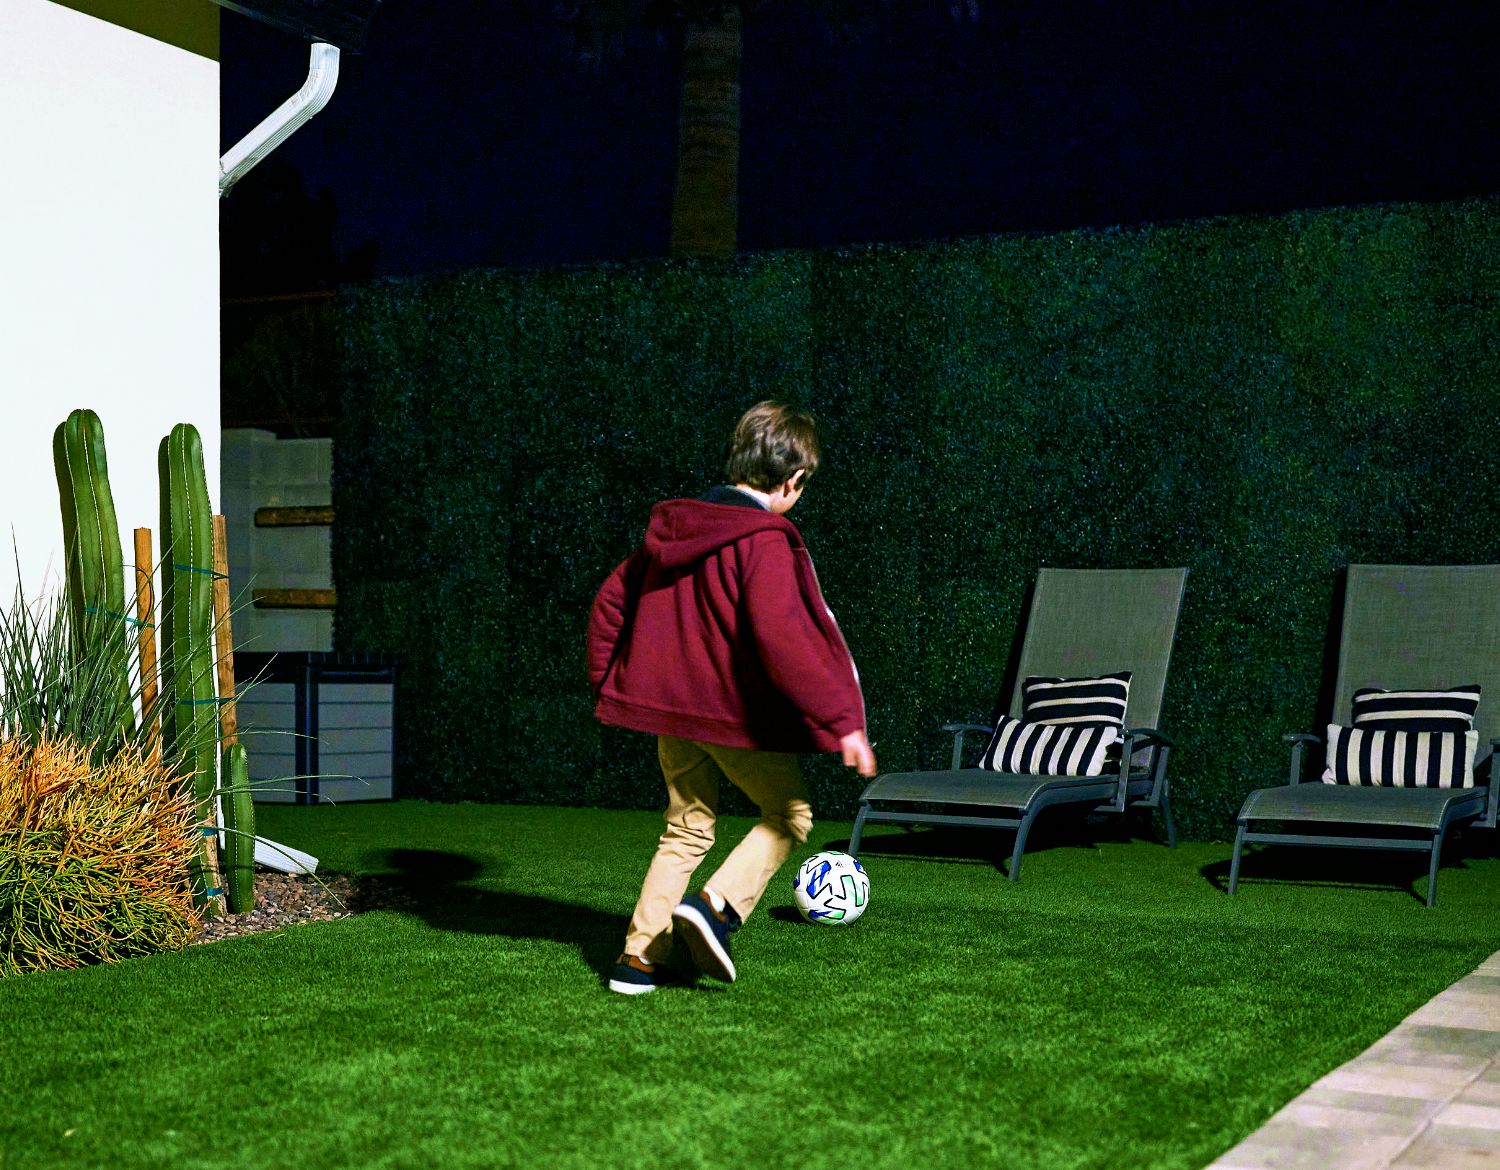 Una imagen muestra a un niño jugando al fútbol en el jardín por la noche, captada por una cámara de seguridad Arlo Ultra 2XL